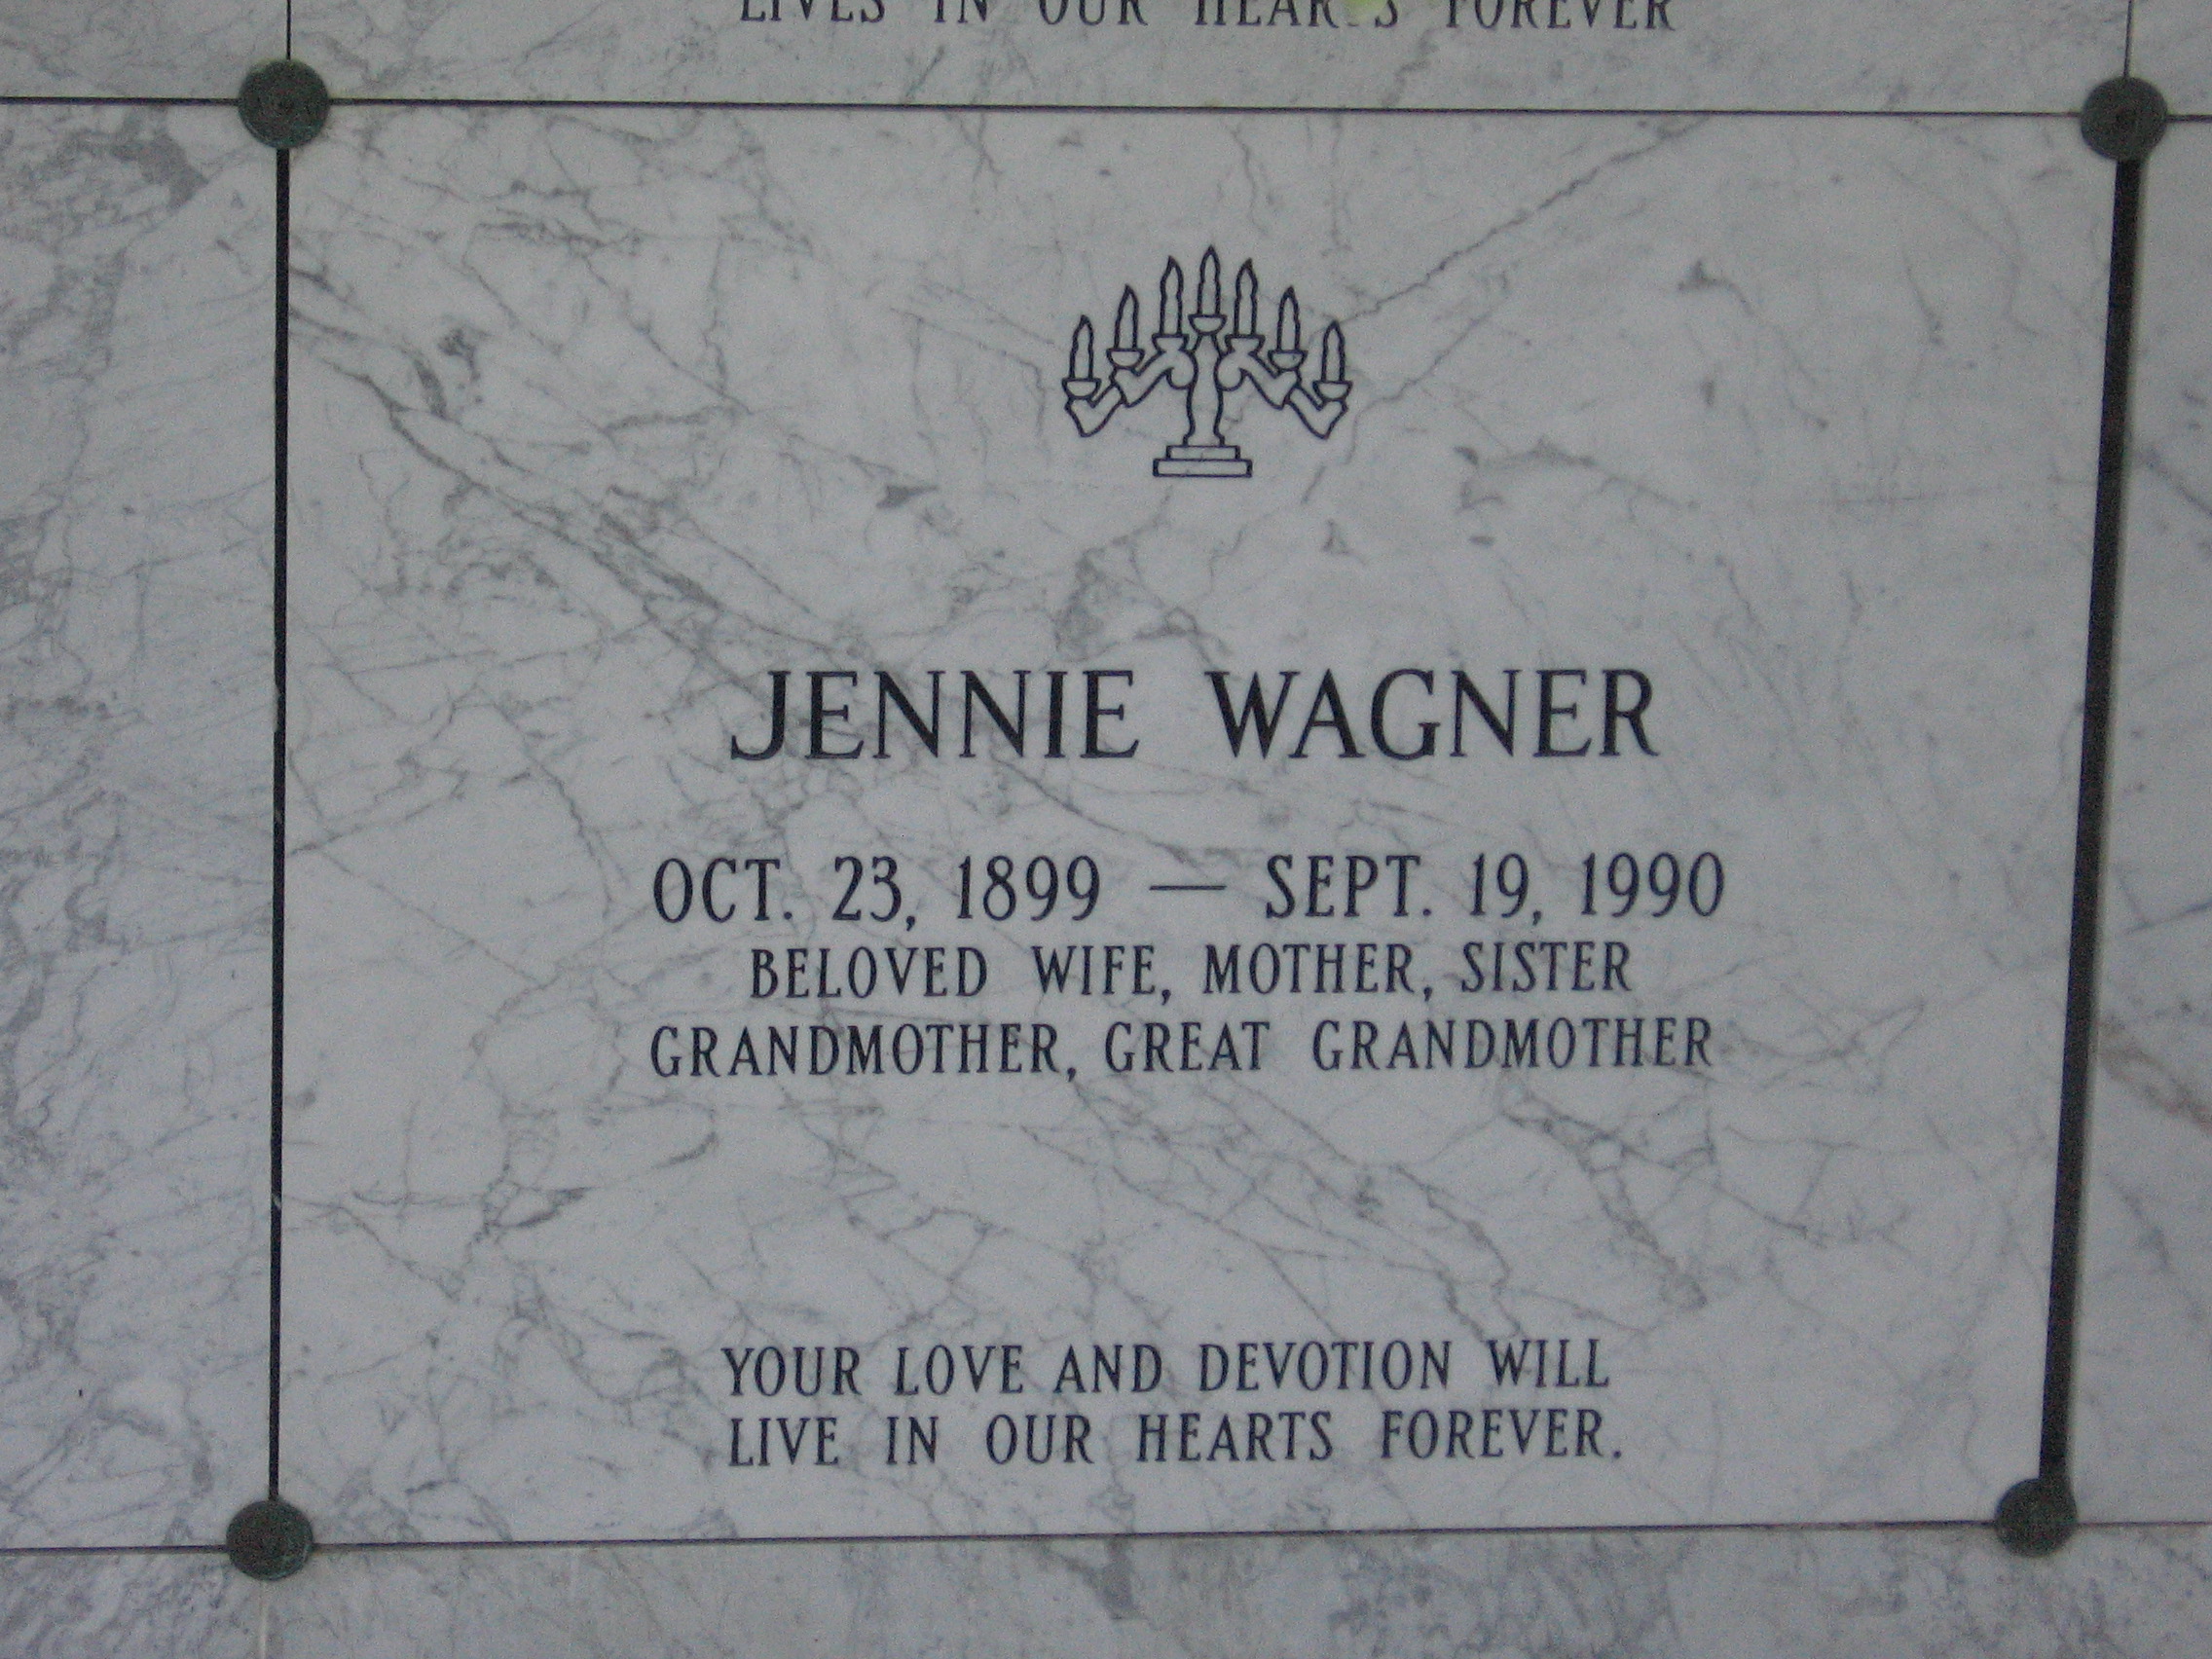 Jennie Wagner